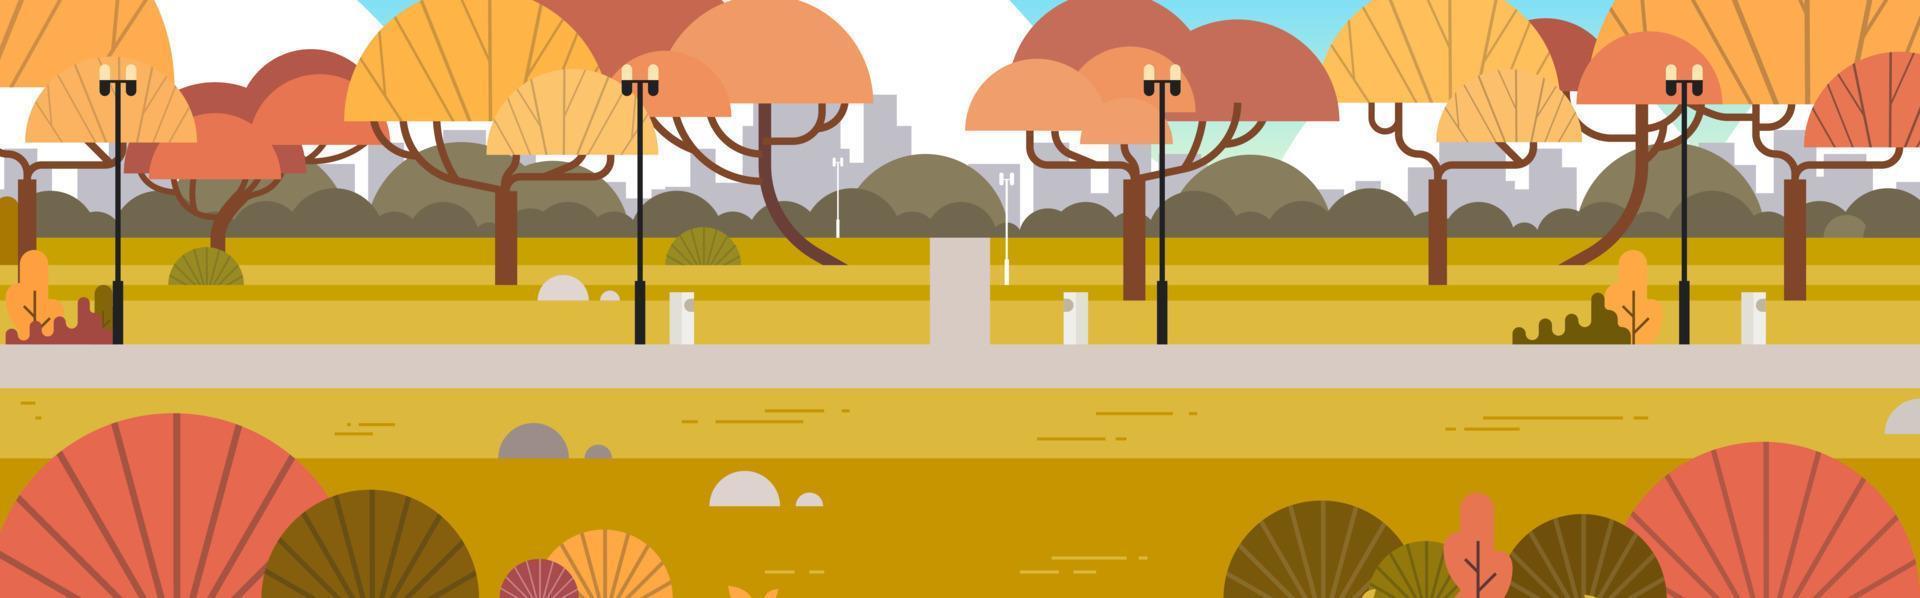 parc urbain extérieur et parc de la ville paysage d'automne bannière horizontale illustration vectorielle plane. vecteur